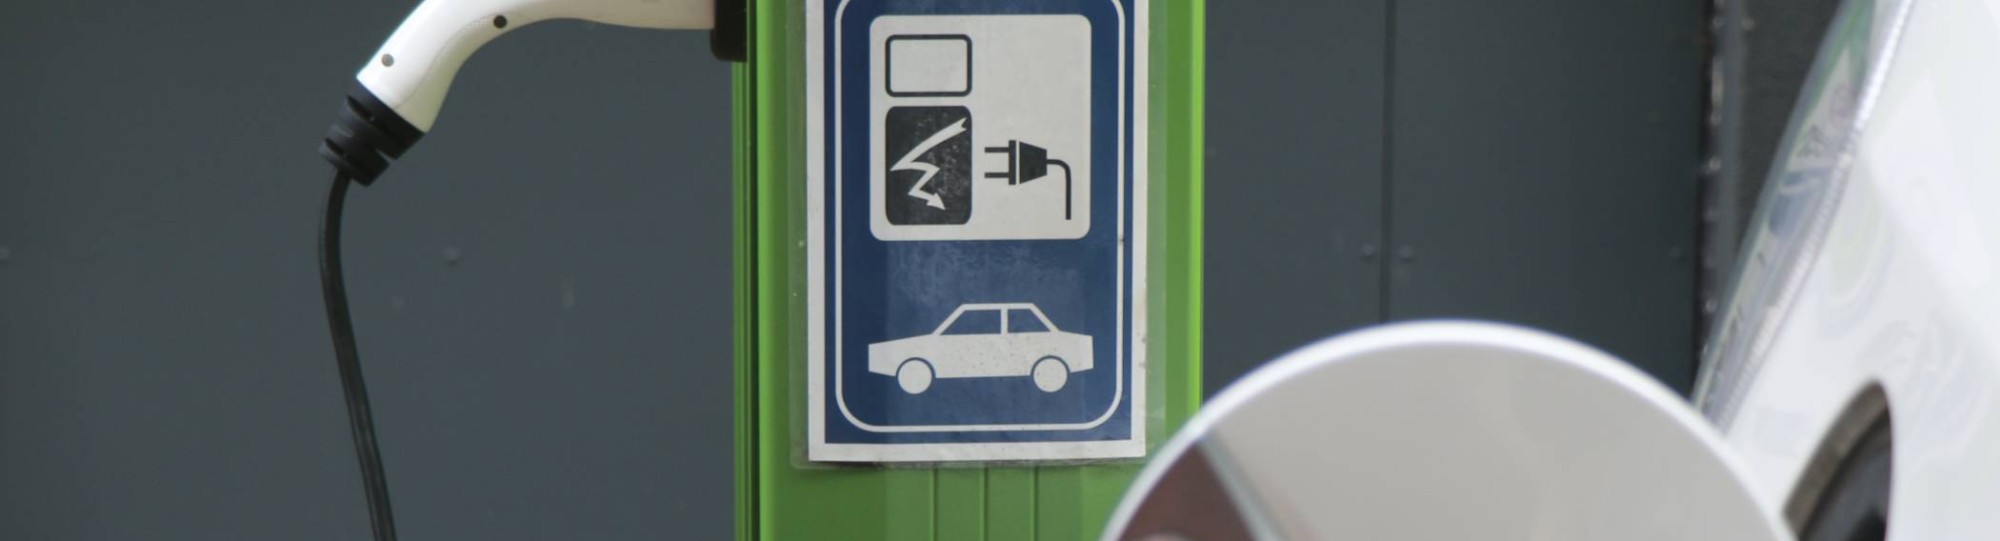 34295 Groene Laadpaal met bordje duiding alleen parkeren met e-voertuig